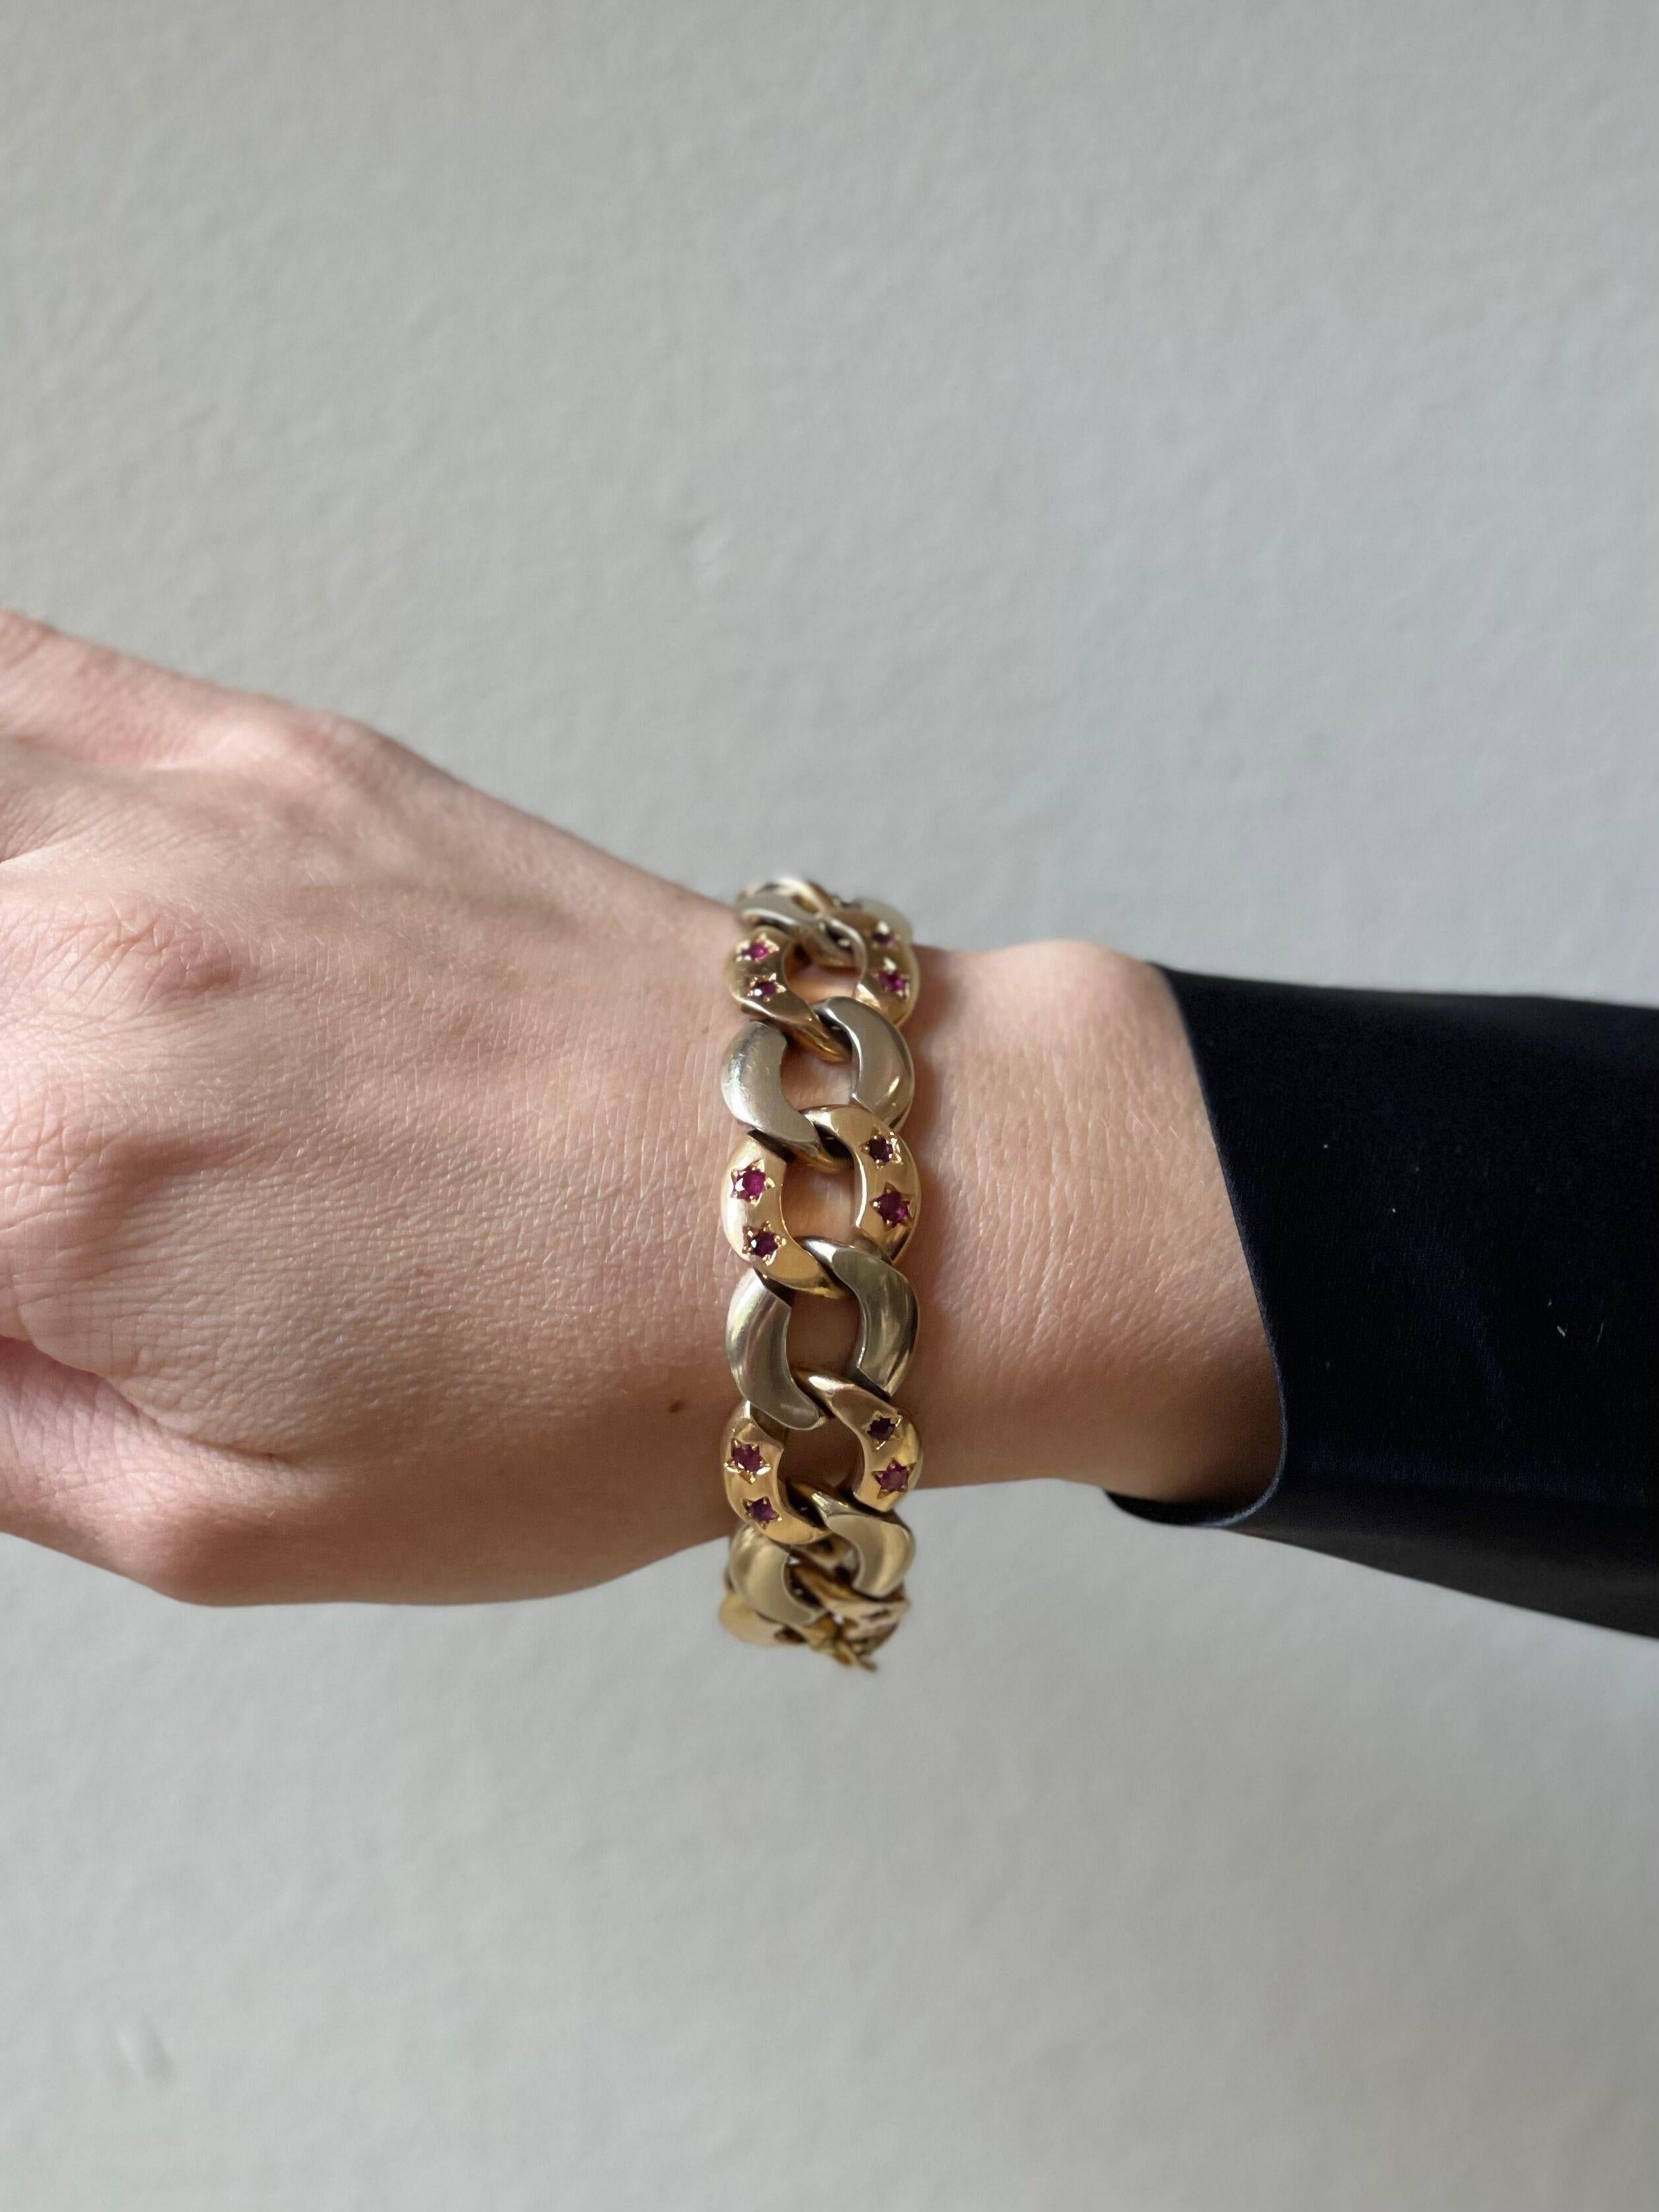 Bracelet rétro en or bicolore 18k de fabrication italienne, orné de pierres précieuses en forme de rubis. Le bracelet mesure 7,25